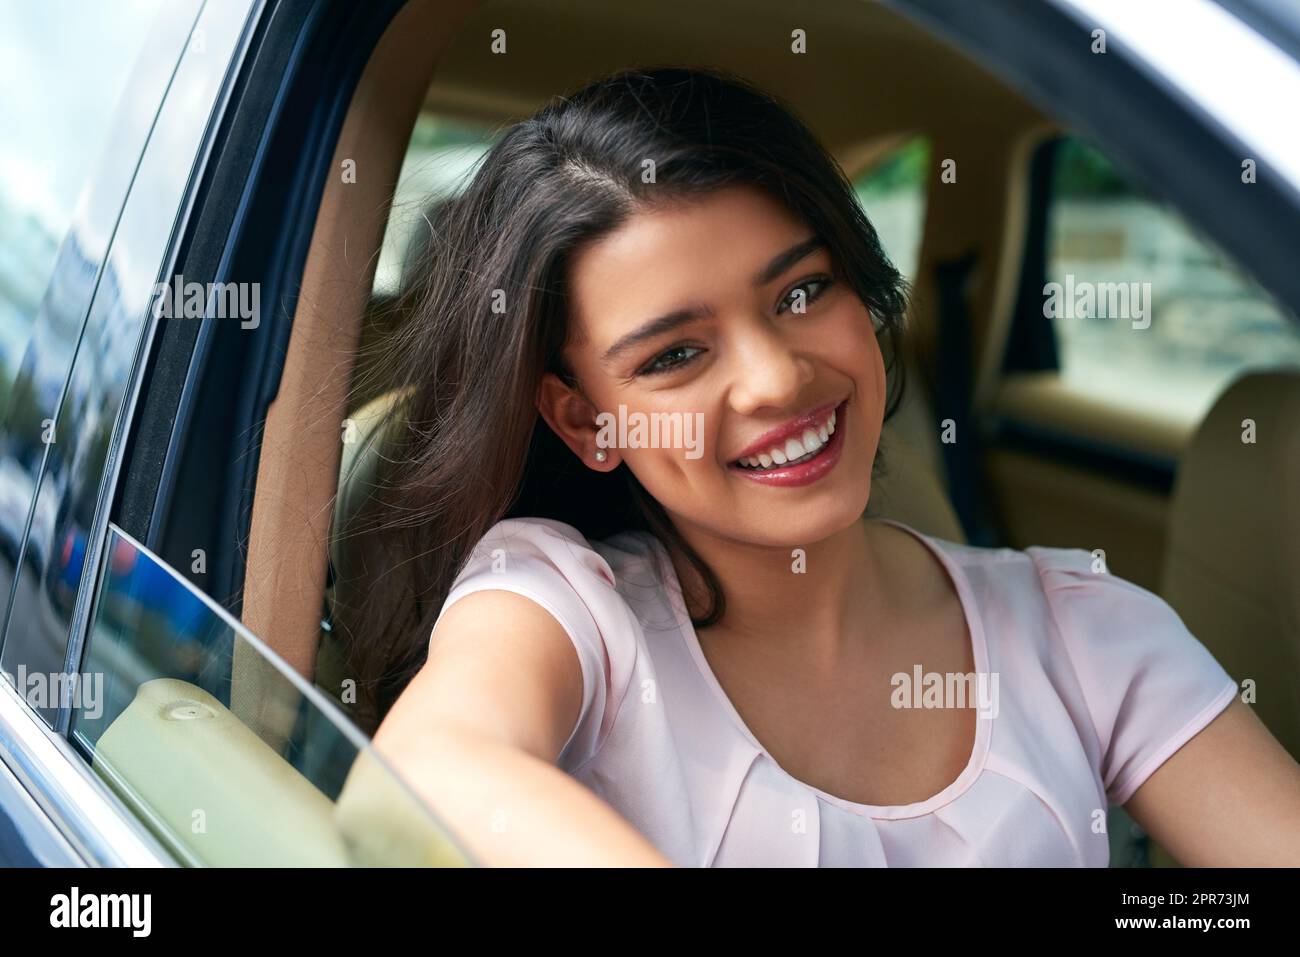 È una nuova felice proprietario di auto. Scatto di una giovane donna attraente che guida un'automobile. Foto Stock